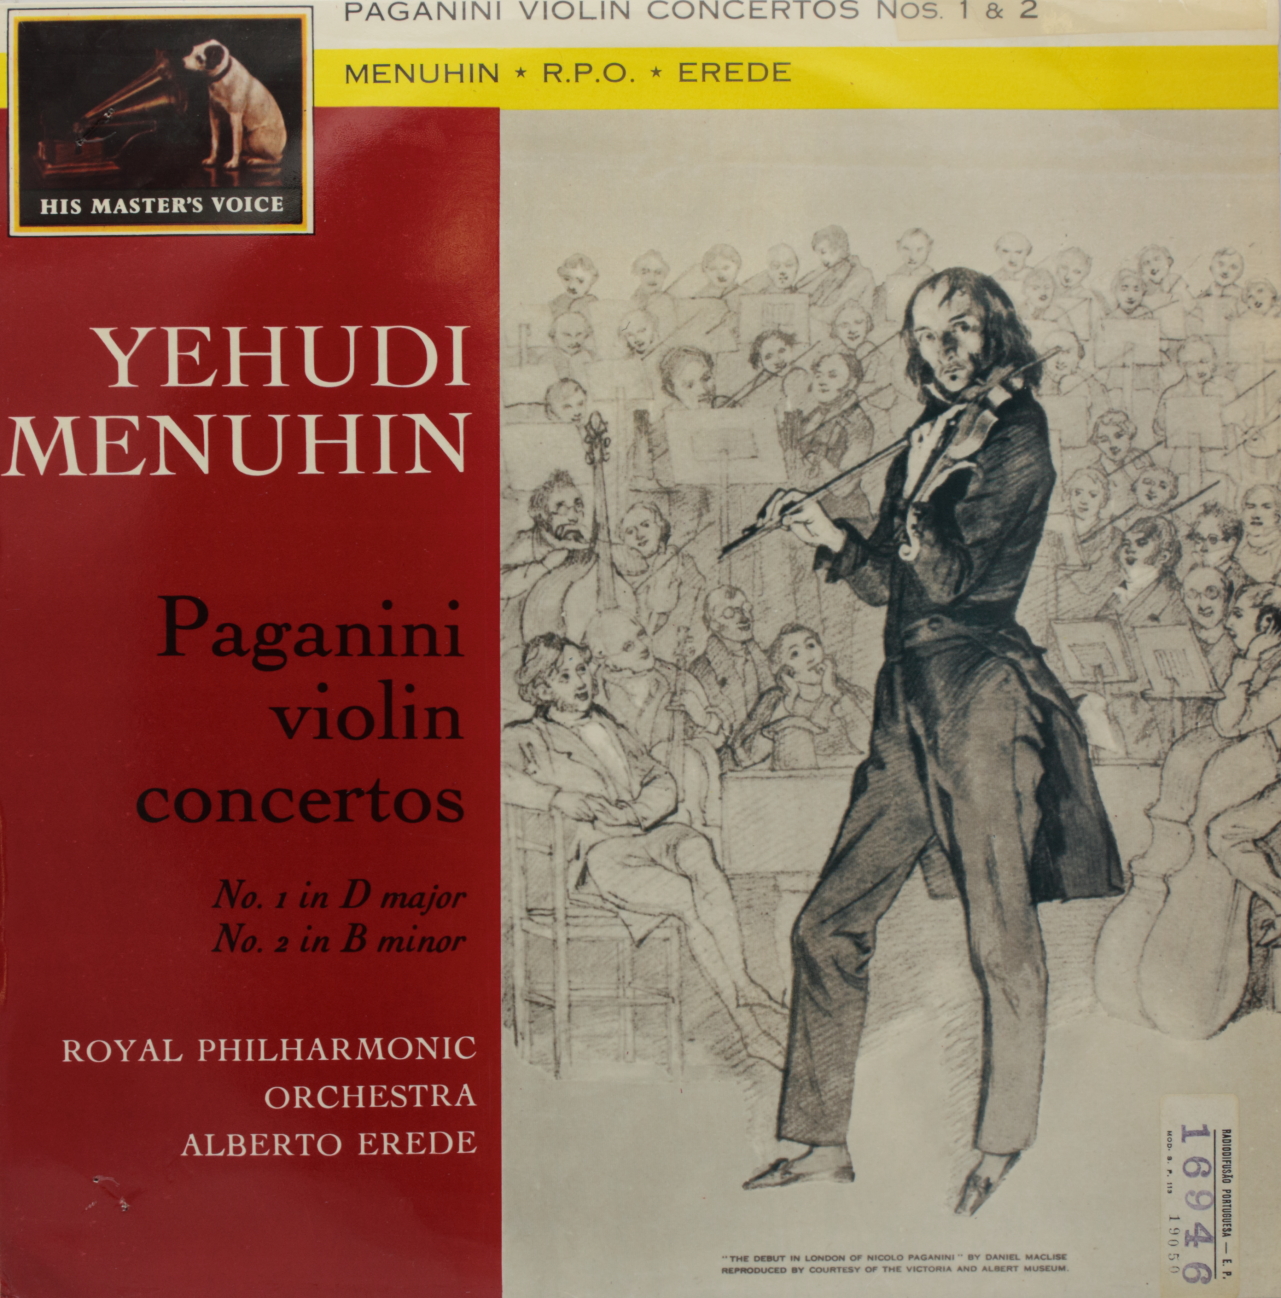 Paganini: Violin Concertos, No. 1 in D major; No. 2 in B minor